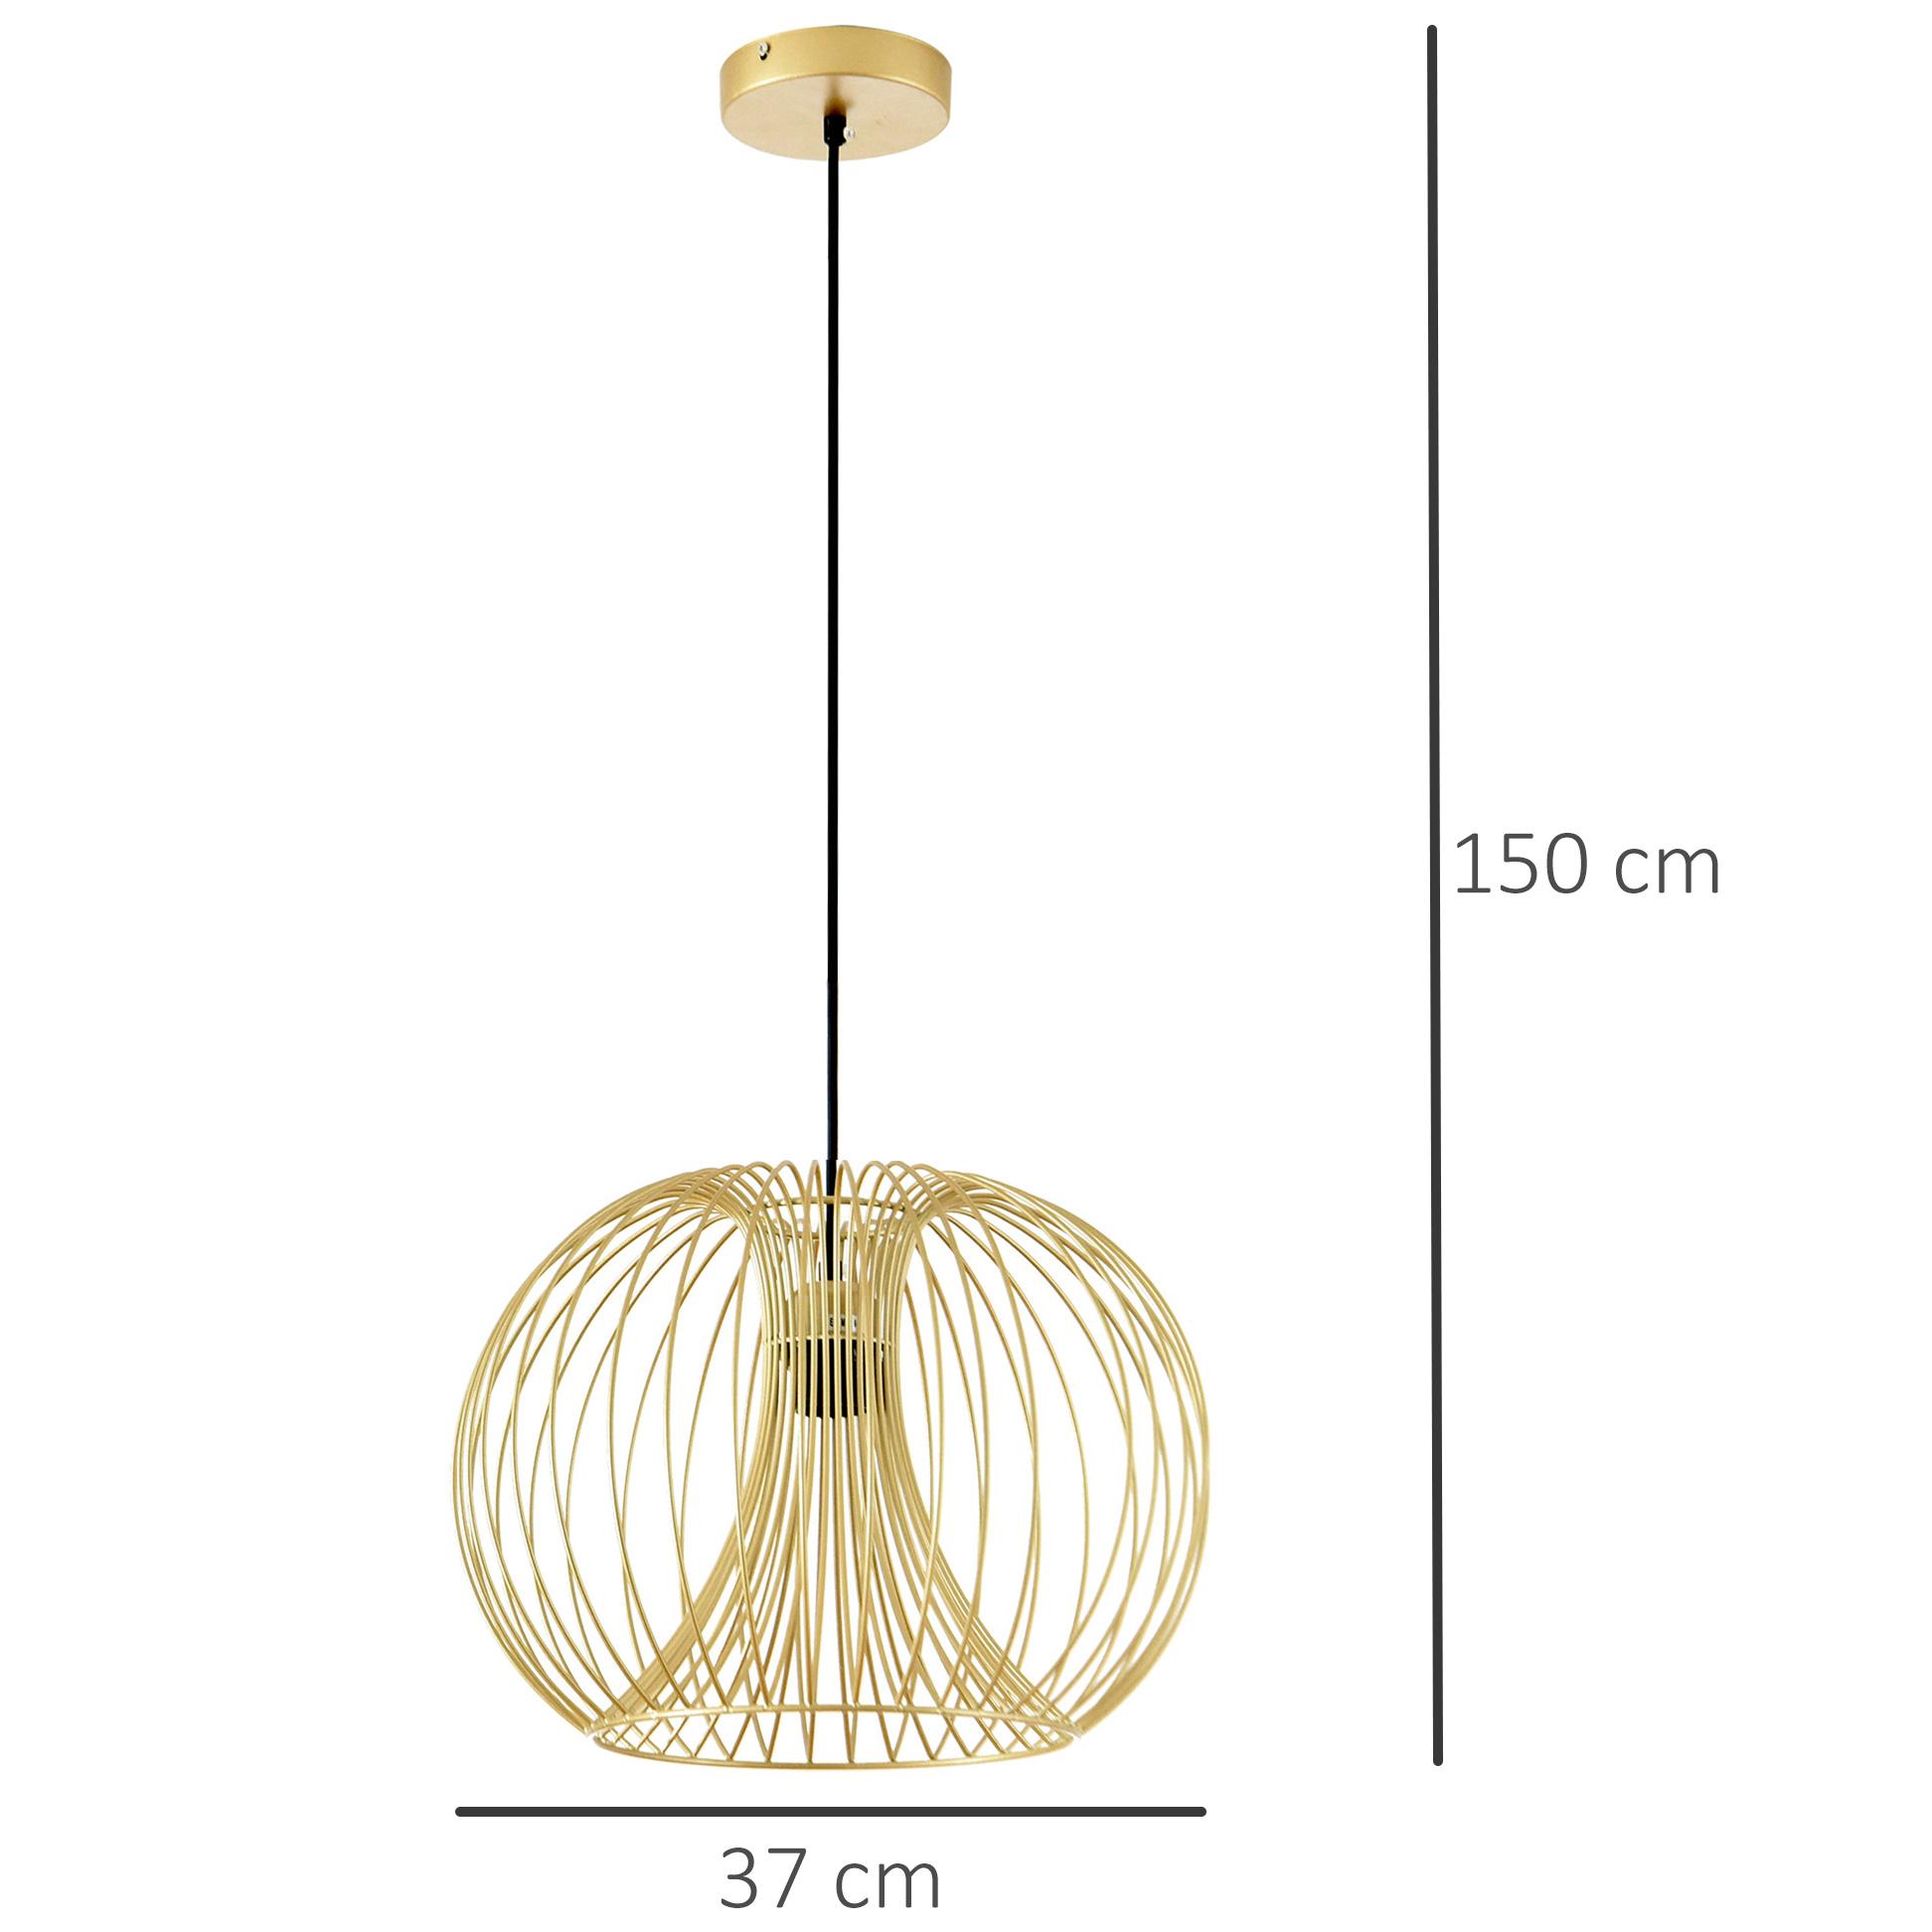 Lustre suspension design filaire dorée Ø 37 x 150 cm métal doré